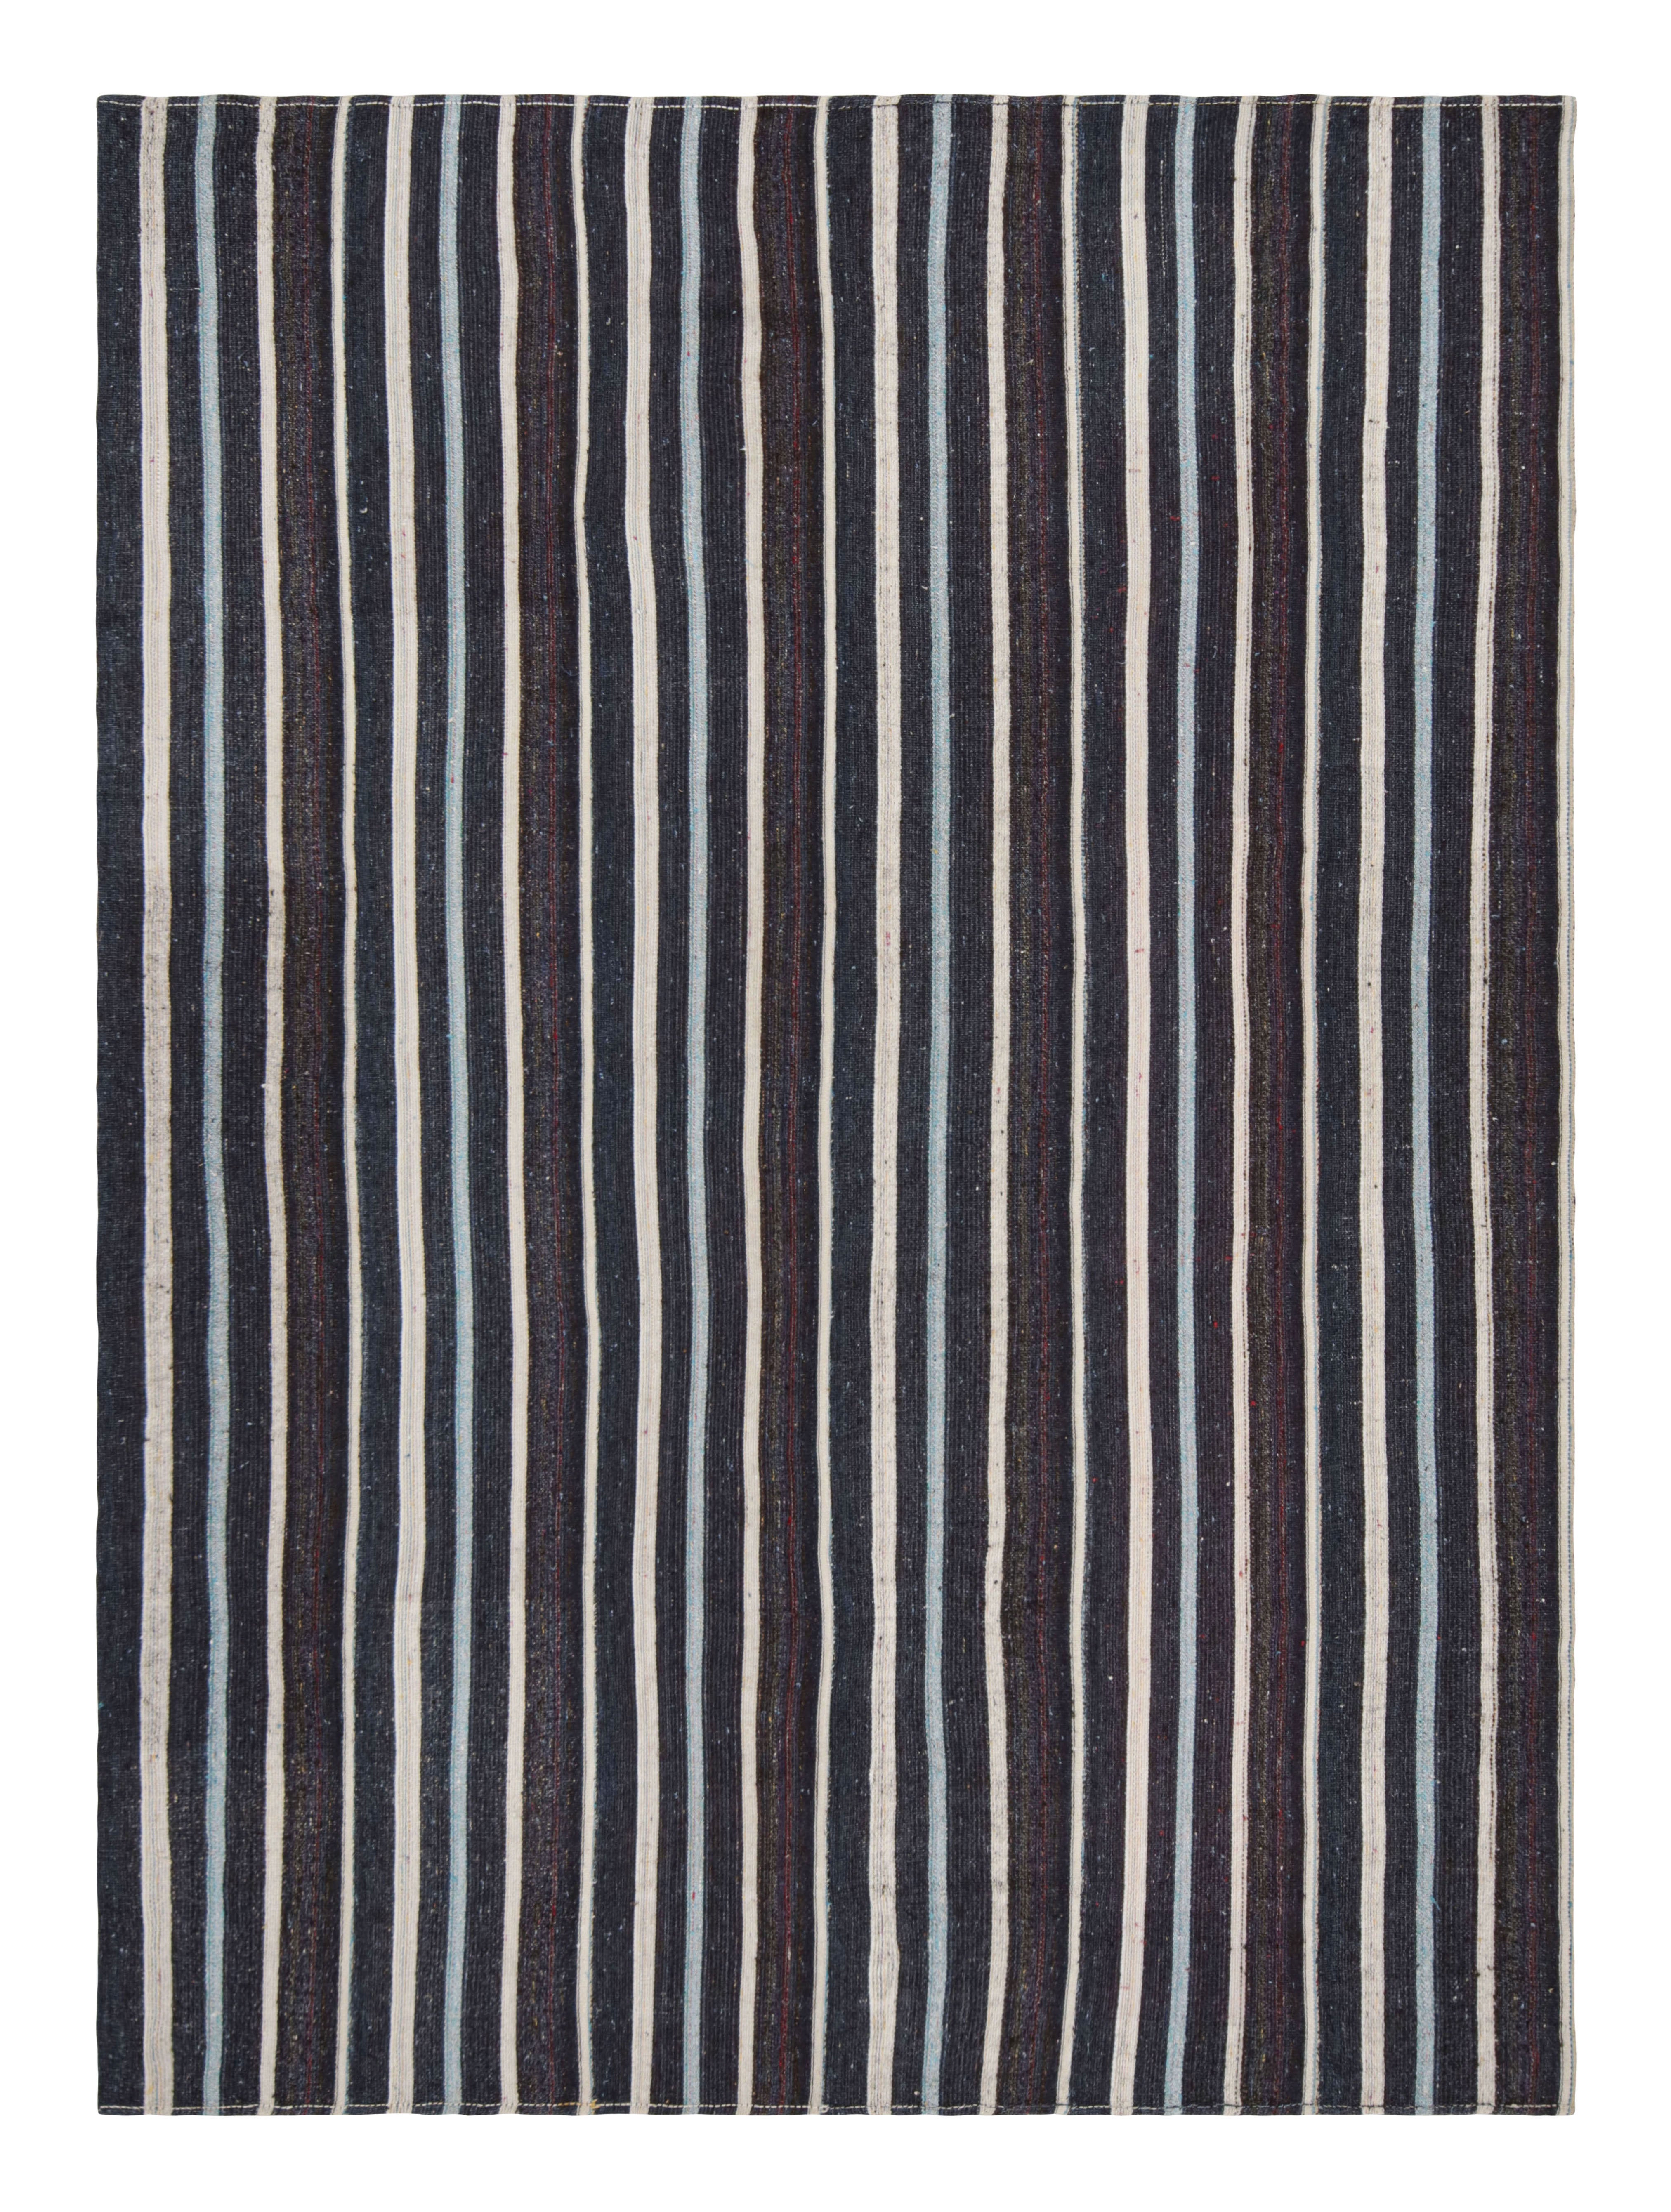 Vintage Midcentury Turkish in Wool Brown and Blue Striped Pattern by Rug & Kilim